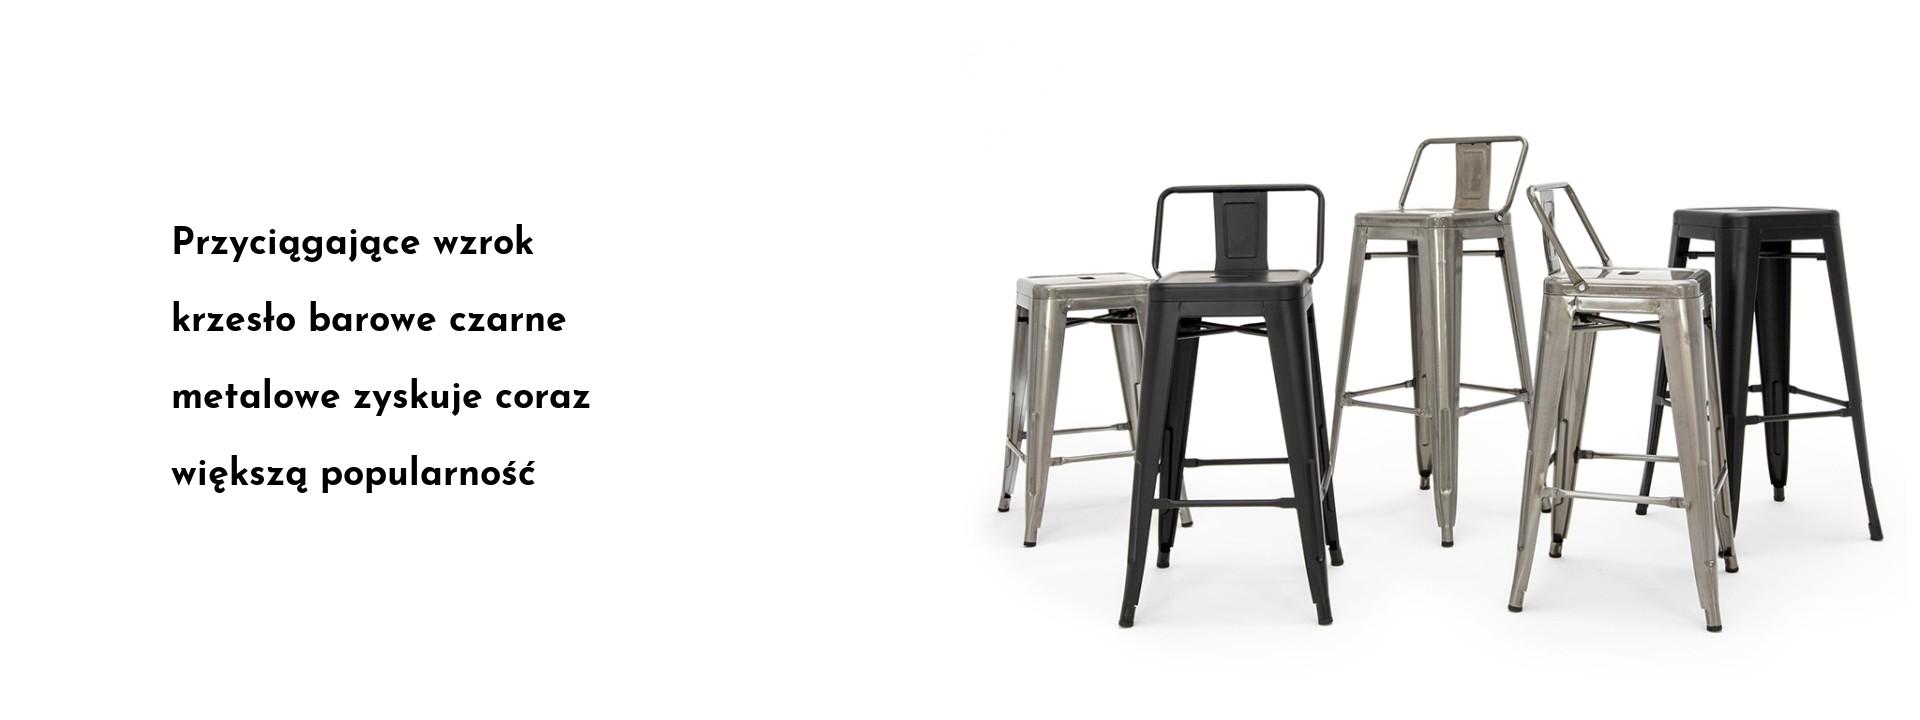 Przyciągające wzrok krzesło barowe czarne metalowe zyskuje coraz większą popularność